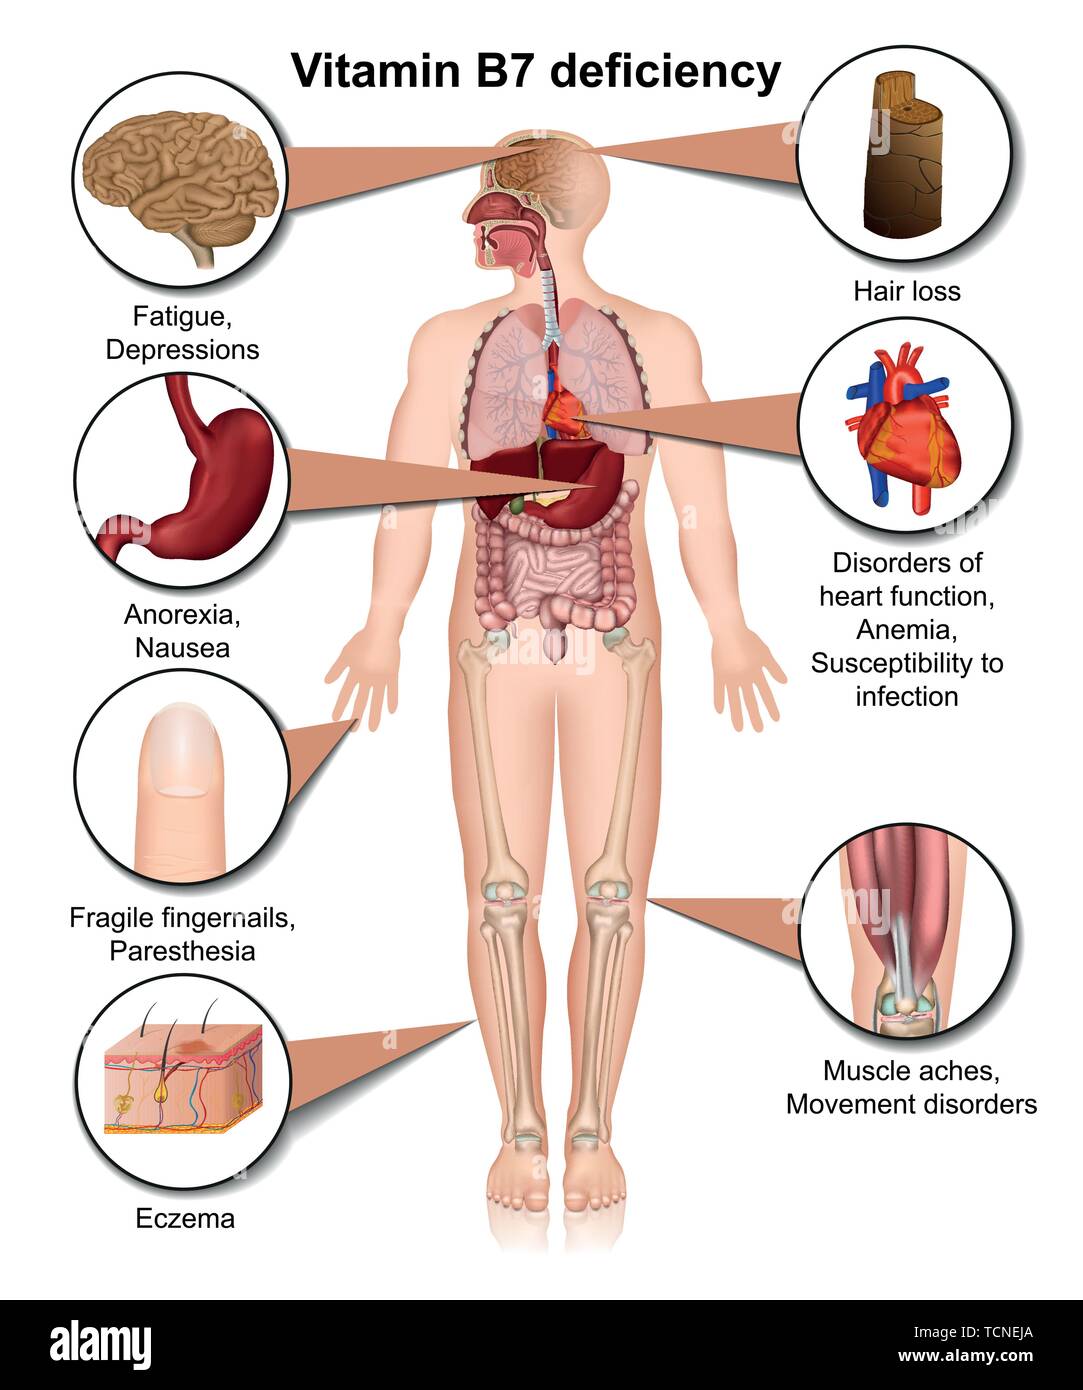 La carence en vitamine B7 vector illustration médicale isolé sur fond blanc infographie Illustration de Vecteur